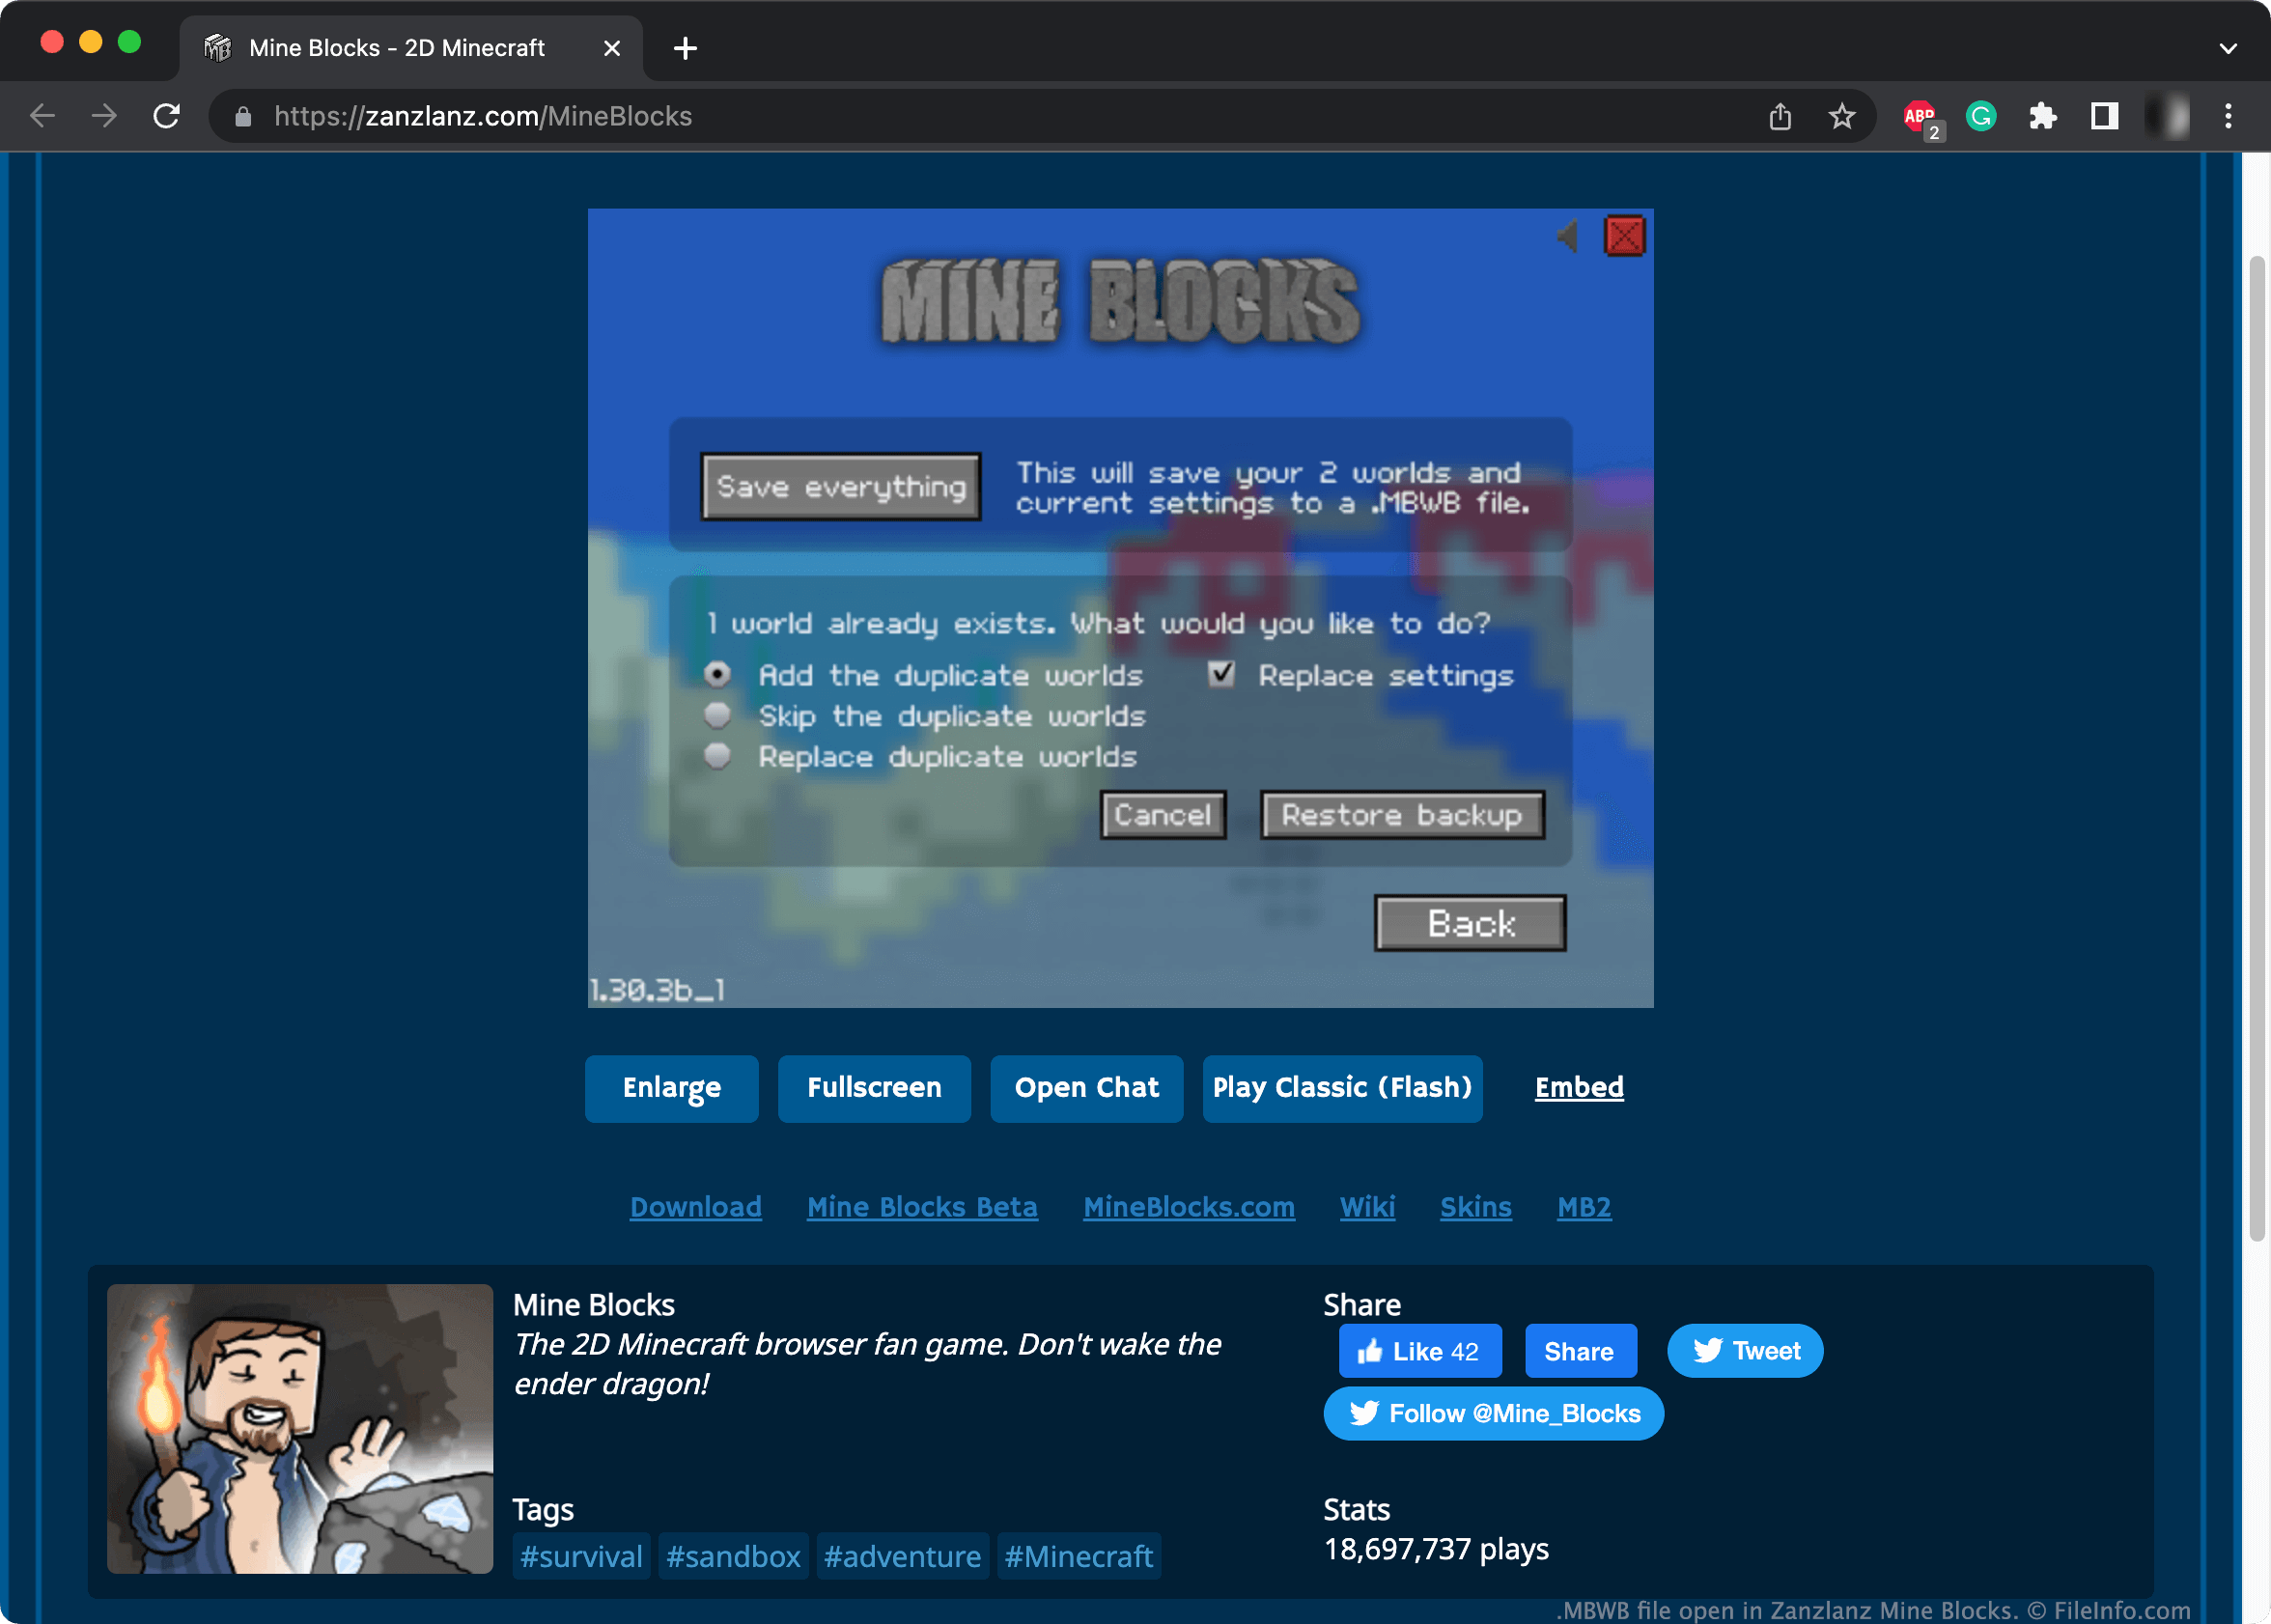 MINECRAFT 2D: MINE BLOCKS 2 free online game on